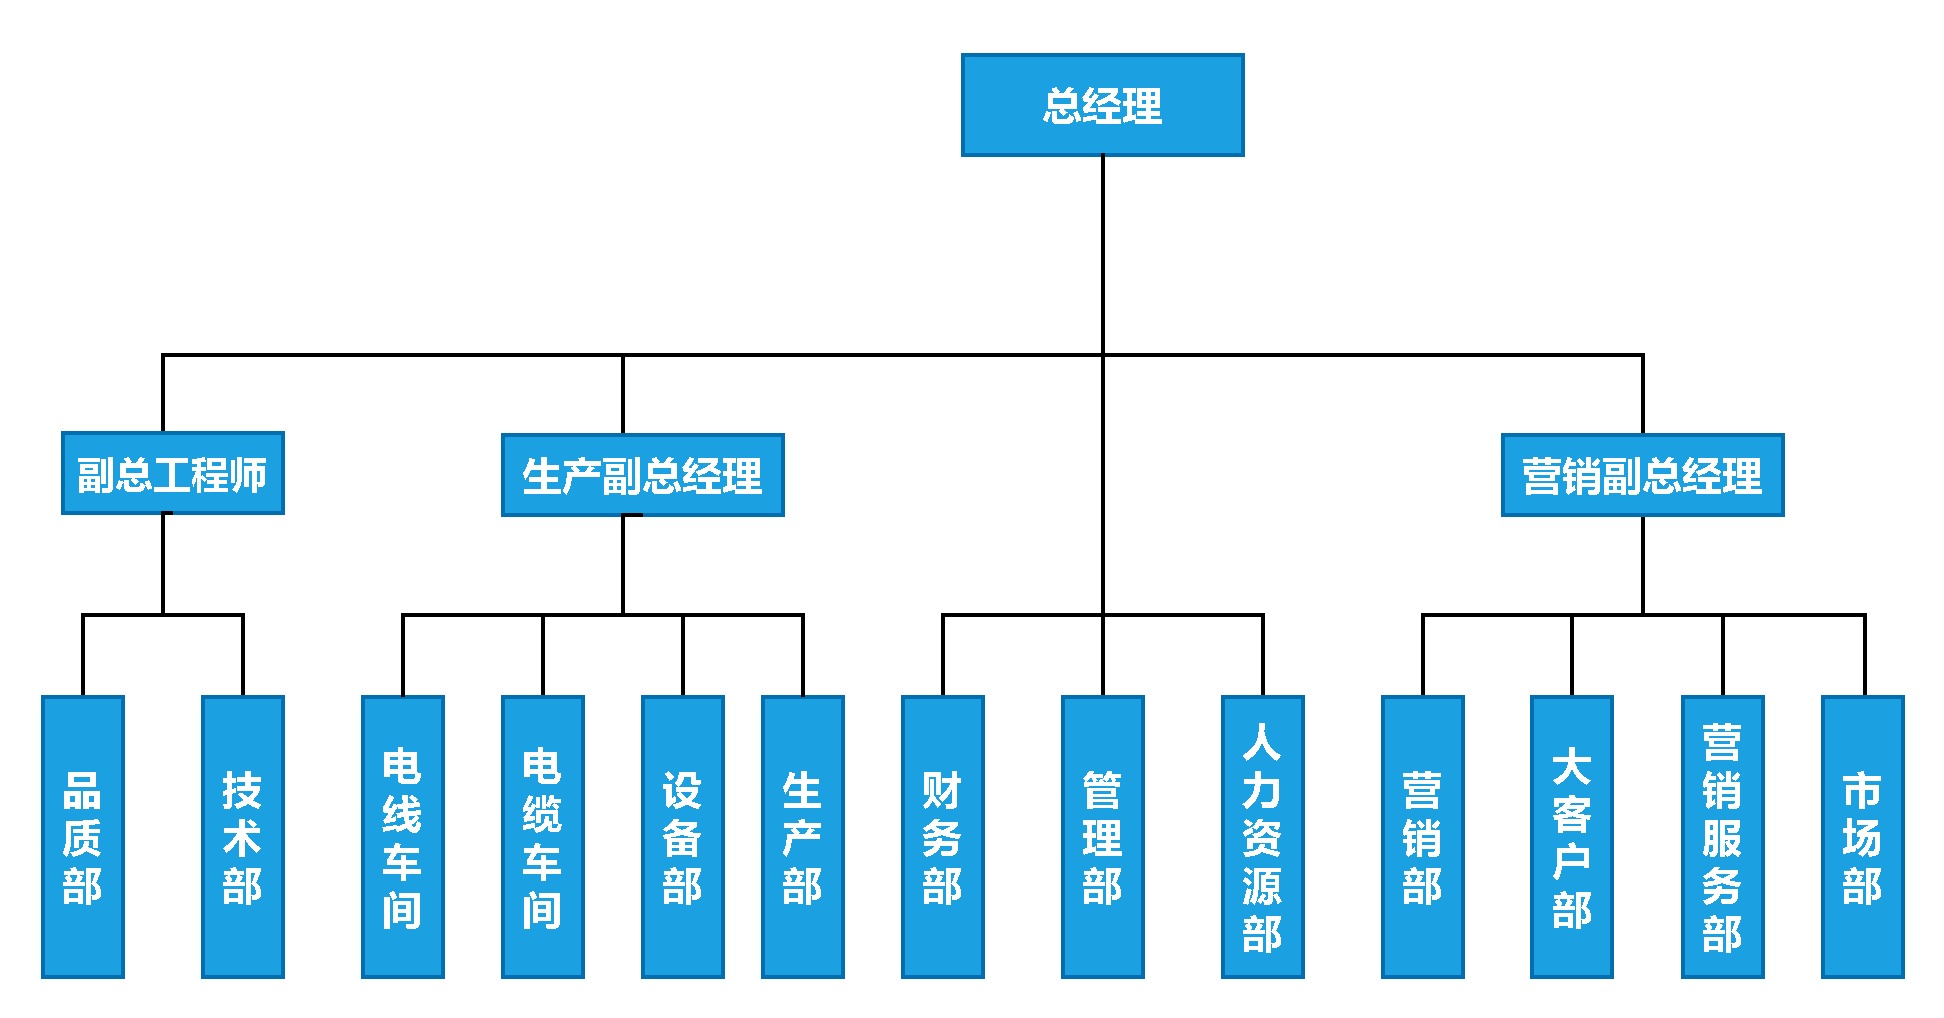 公司组织结构图-第 1 页 (2).jpg